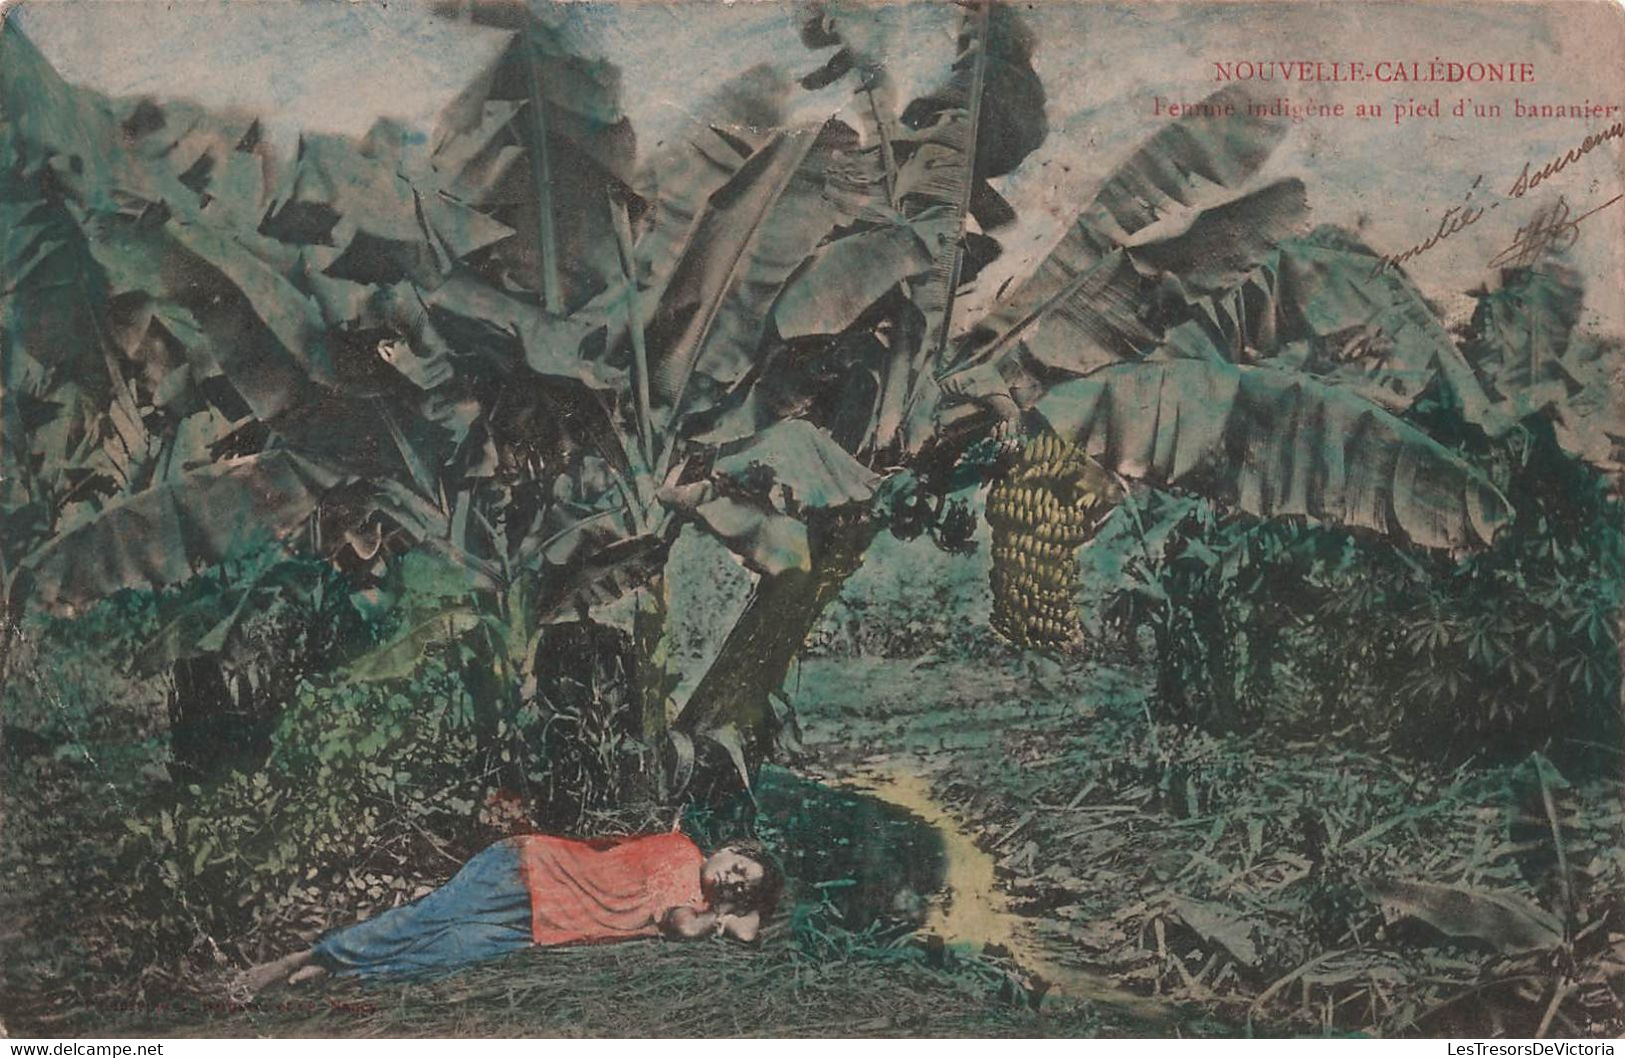 Nouvelle Calédonie - Femme Indigene Au Pied D'un Bananier - Colorisée - RARE - Timbre Taxe - Carte Postale Ancienne - Nueva Caledonia